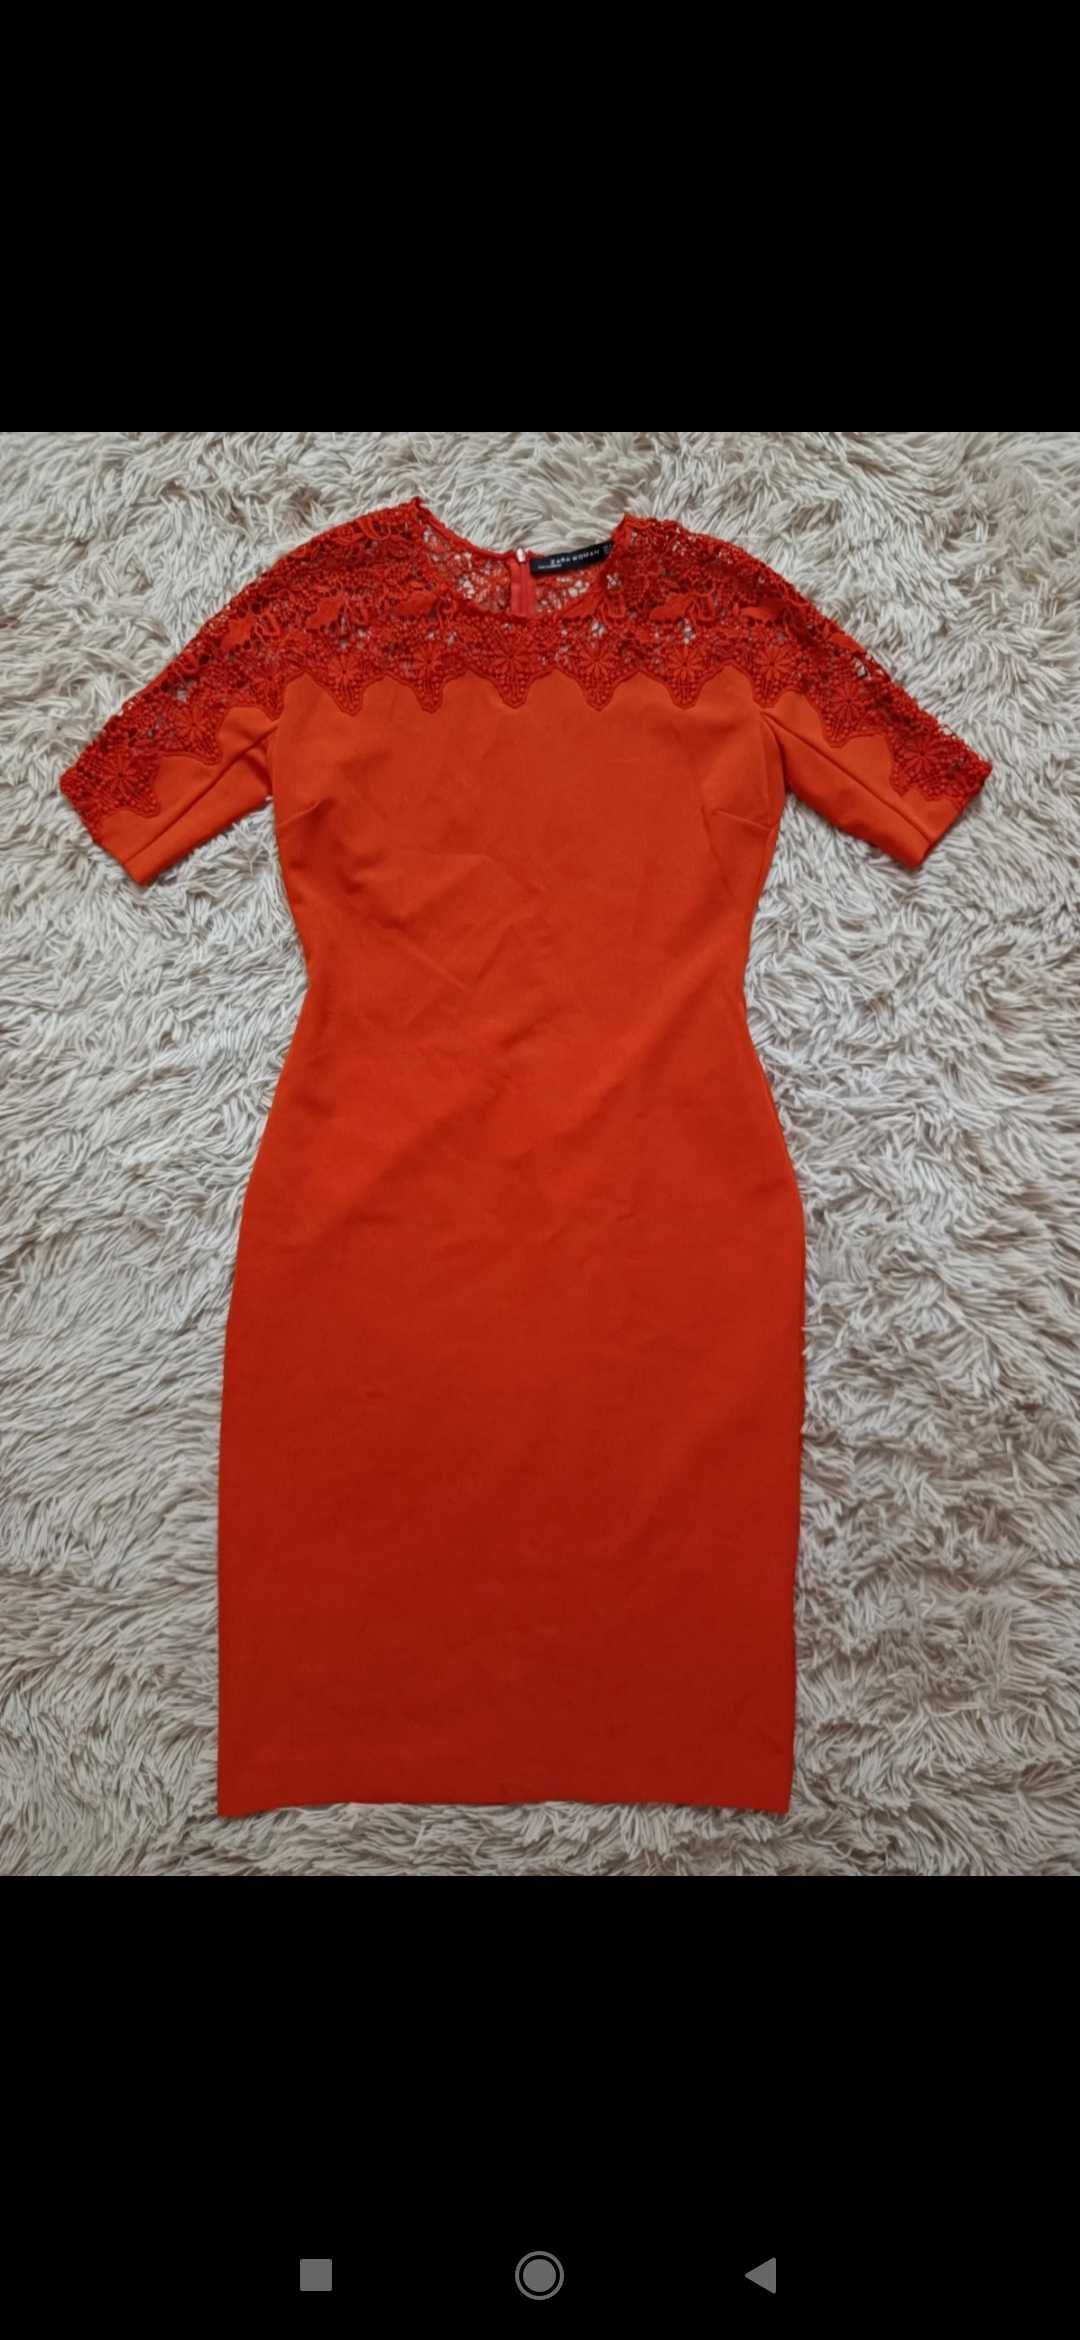 Sukienka Zara m 38 MIDI koralowa czerwona z koronką koronkowa